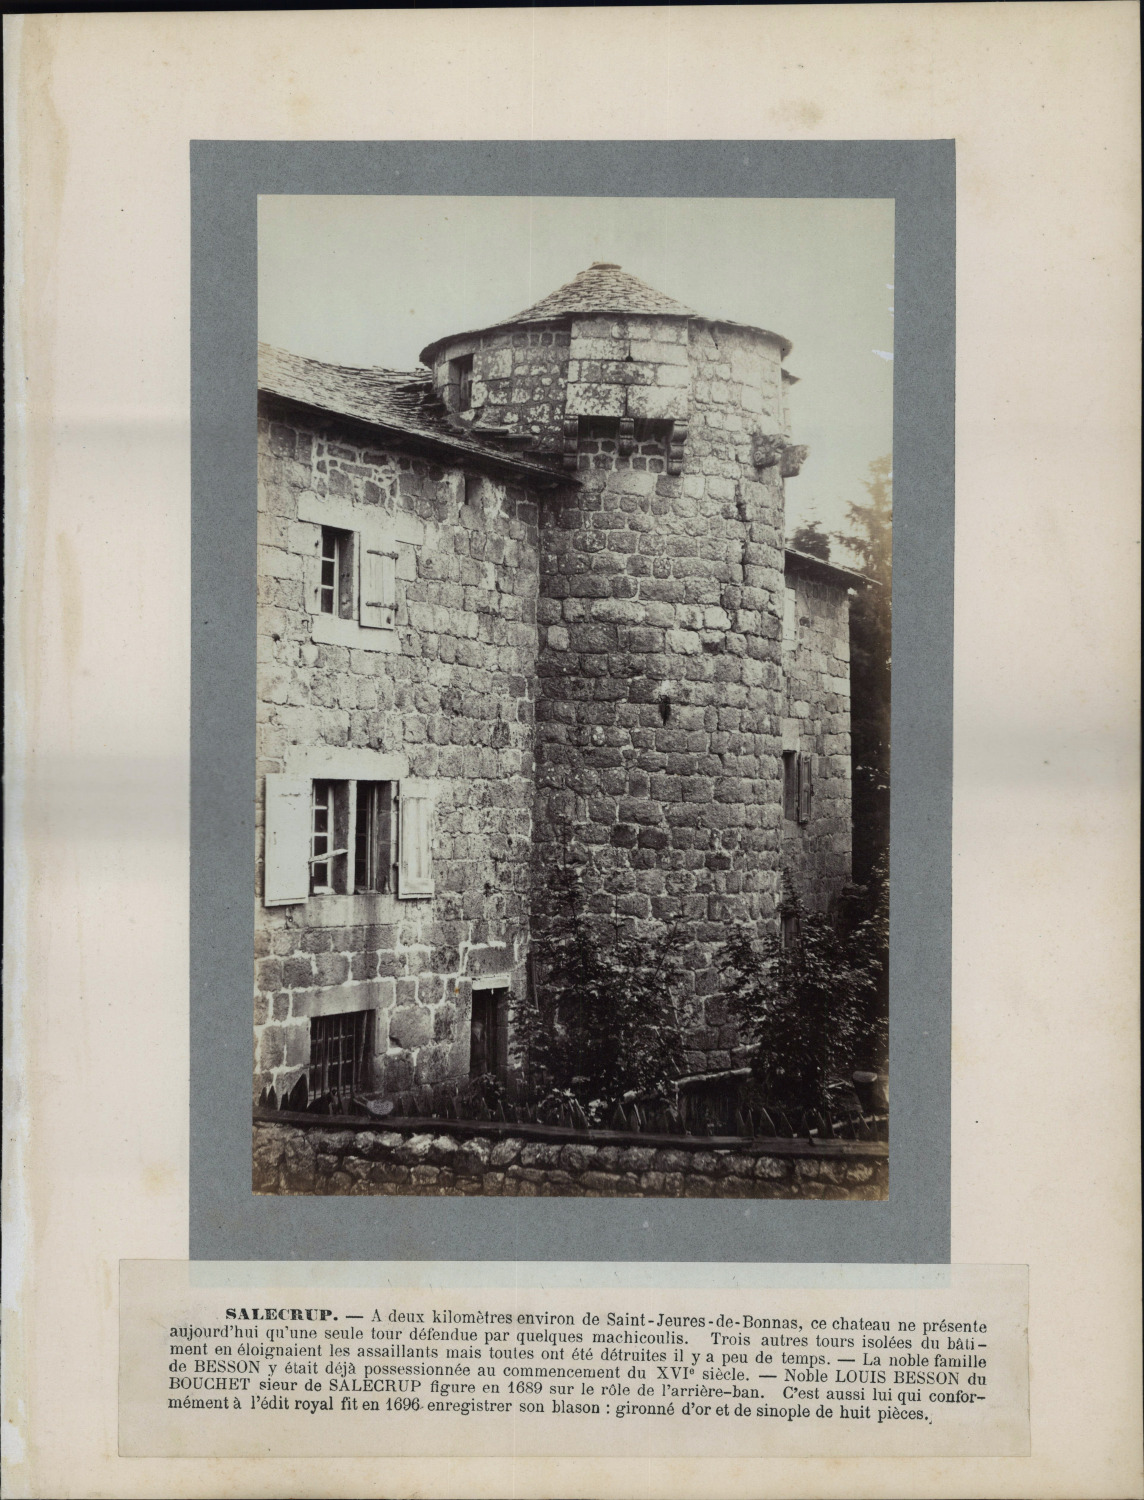 France, Saint-Jeures, Château de Salcrupt vintage print period print print print 